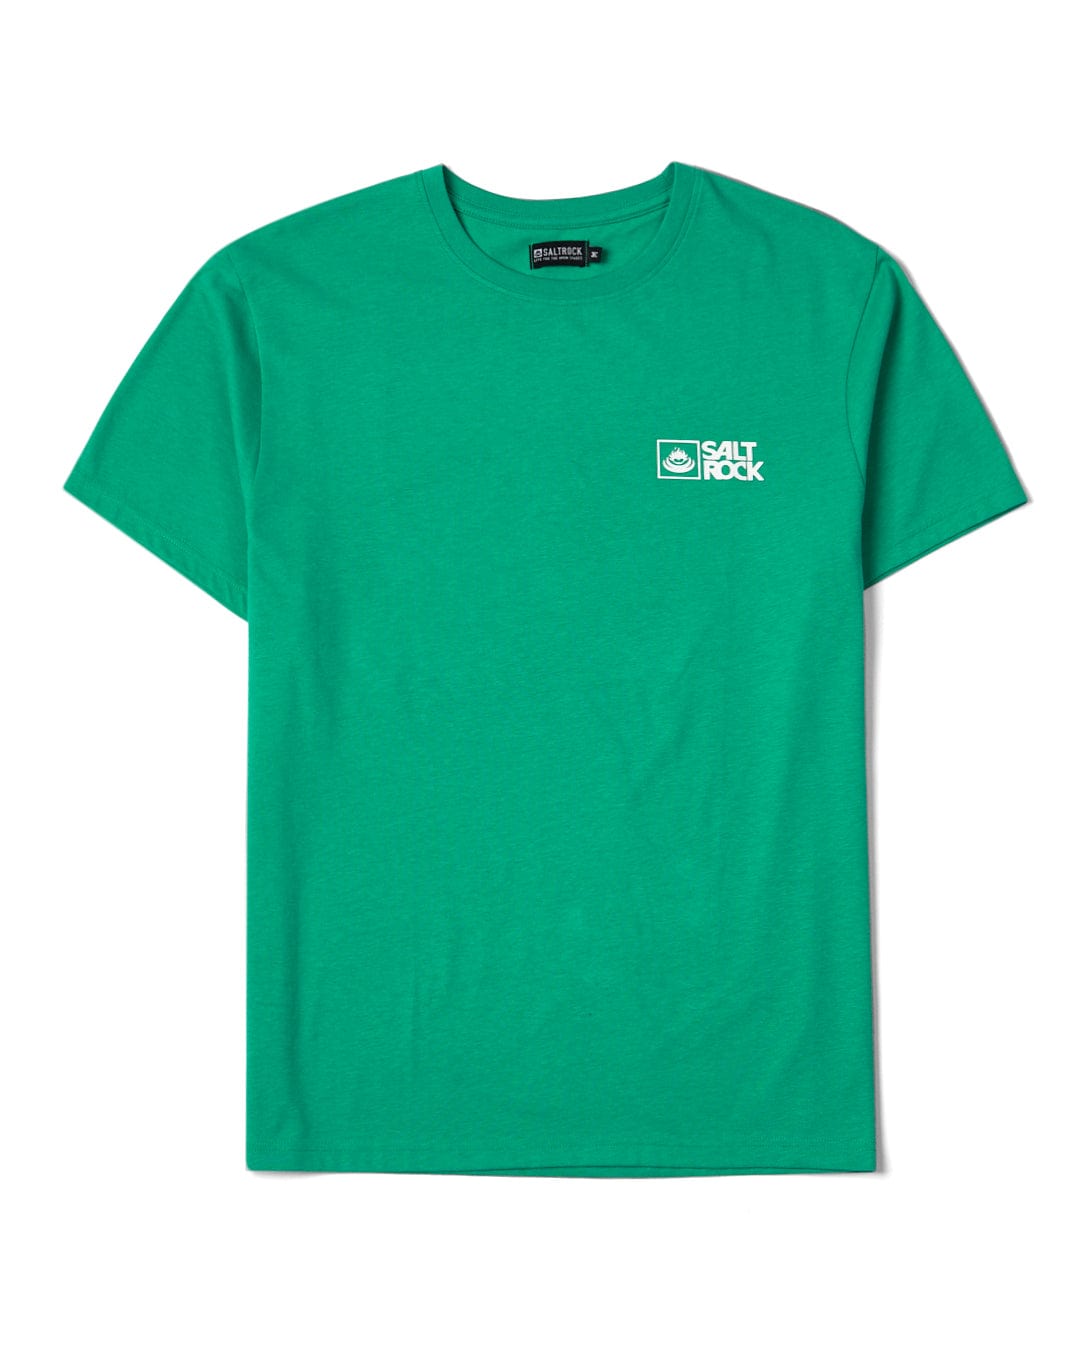 Saltrock Original - Mens Short Sleeve T-Shirt - Green, Green / M